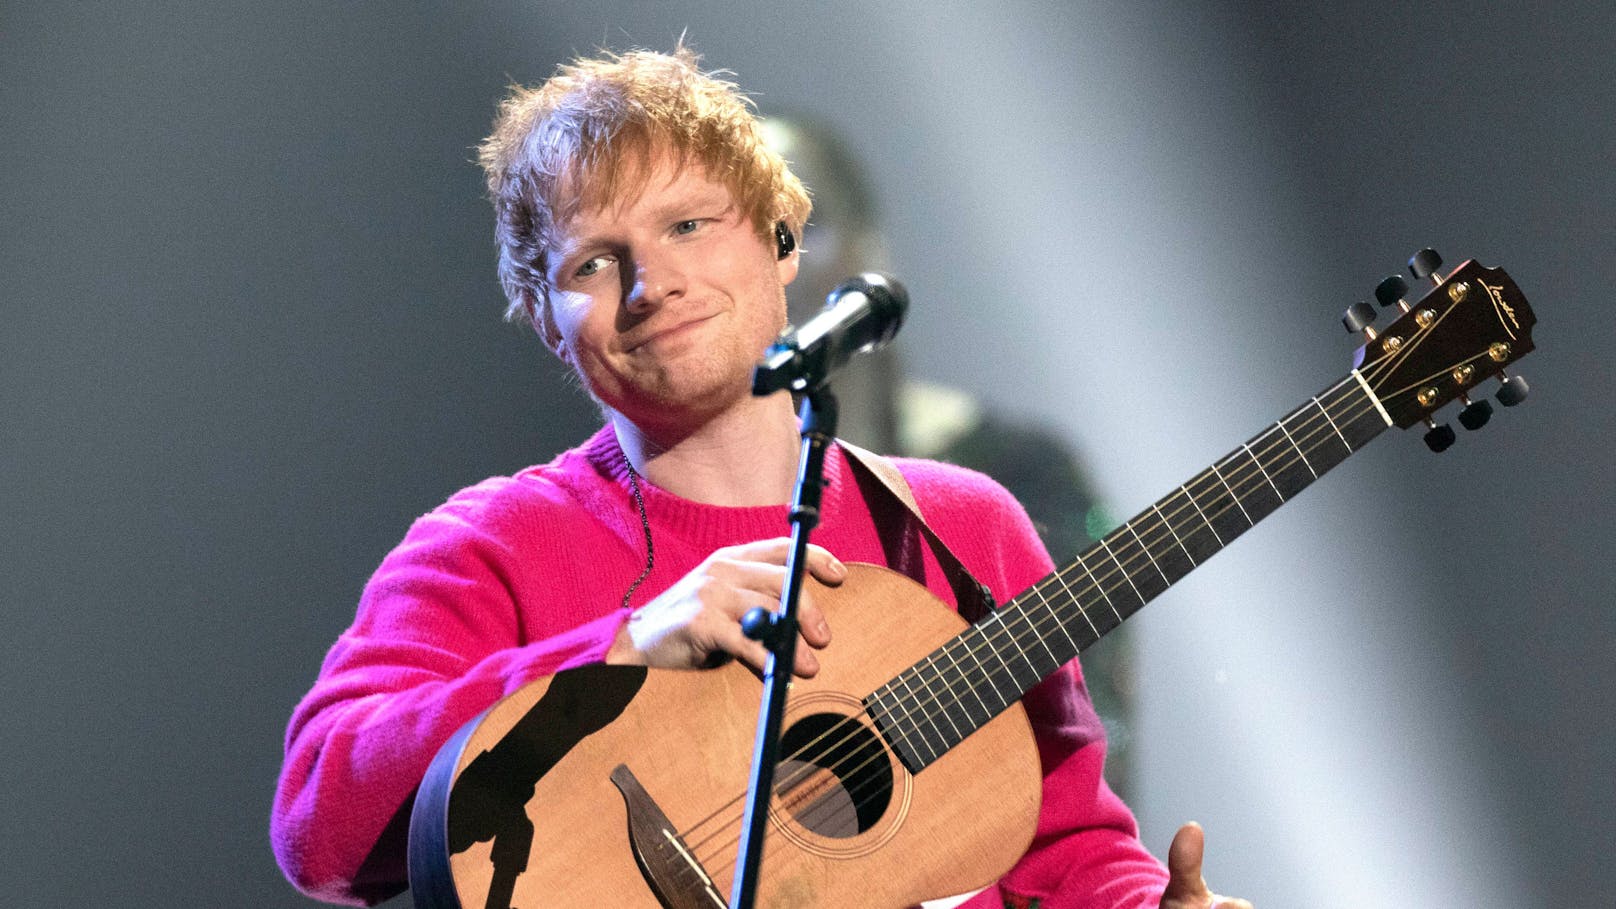 "Autumn" soll das neue Album von Ed Sheeran heißen.